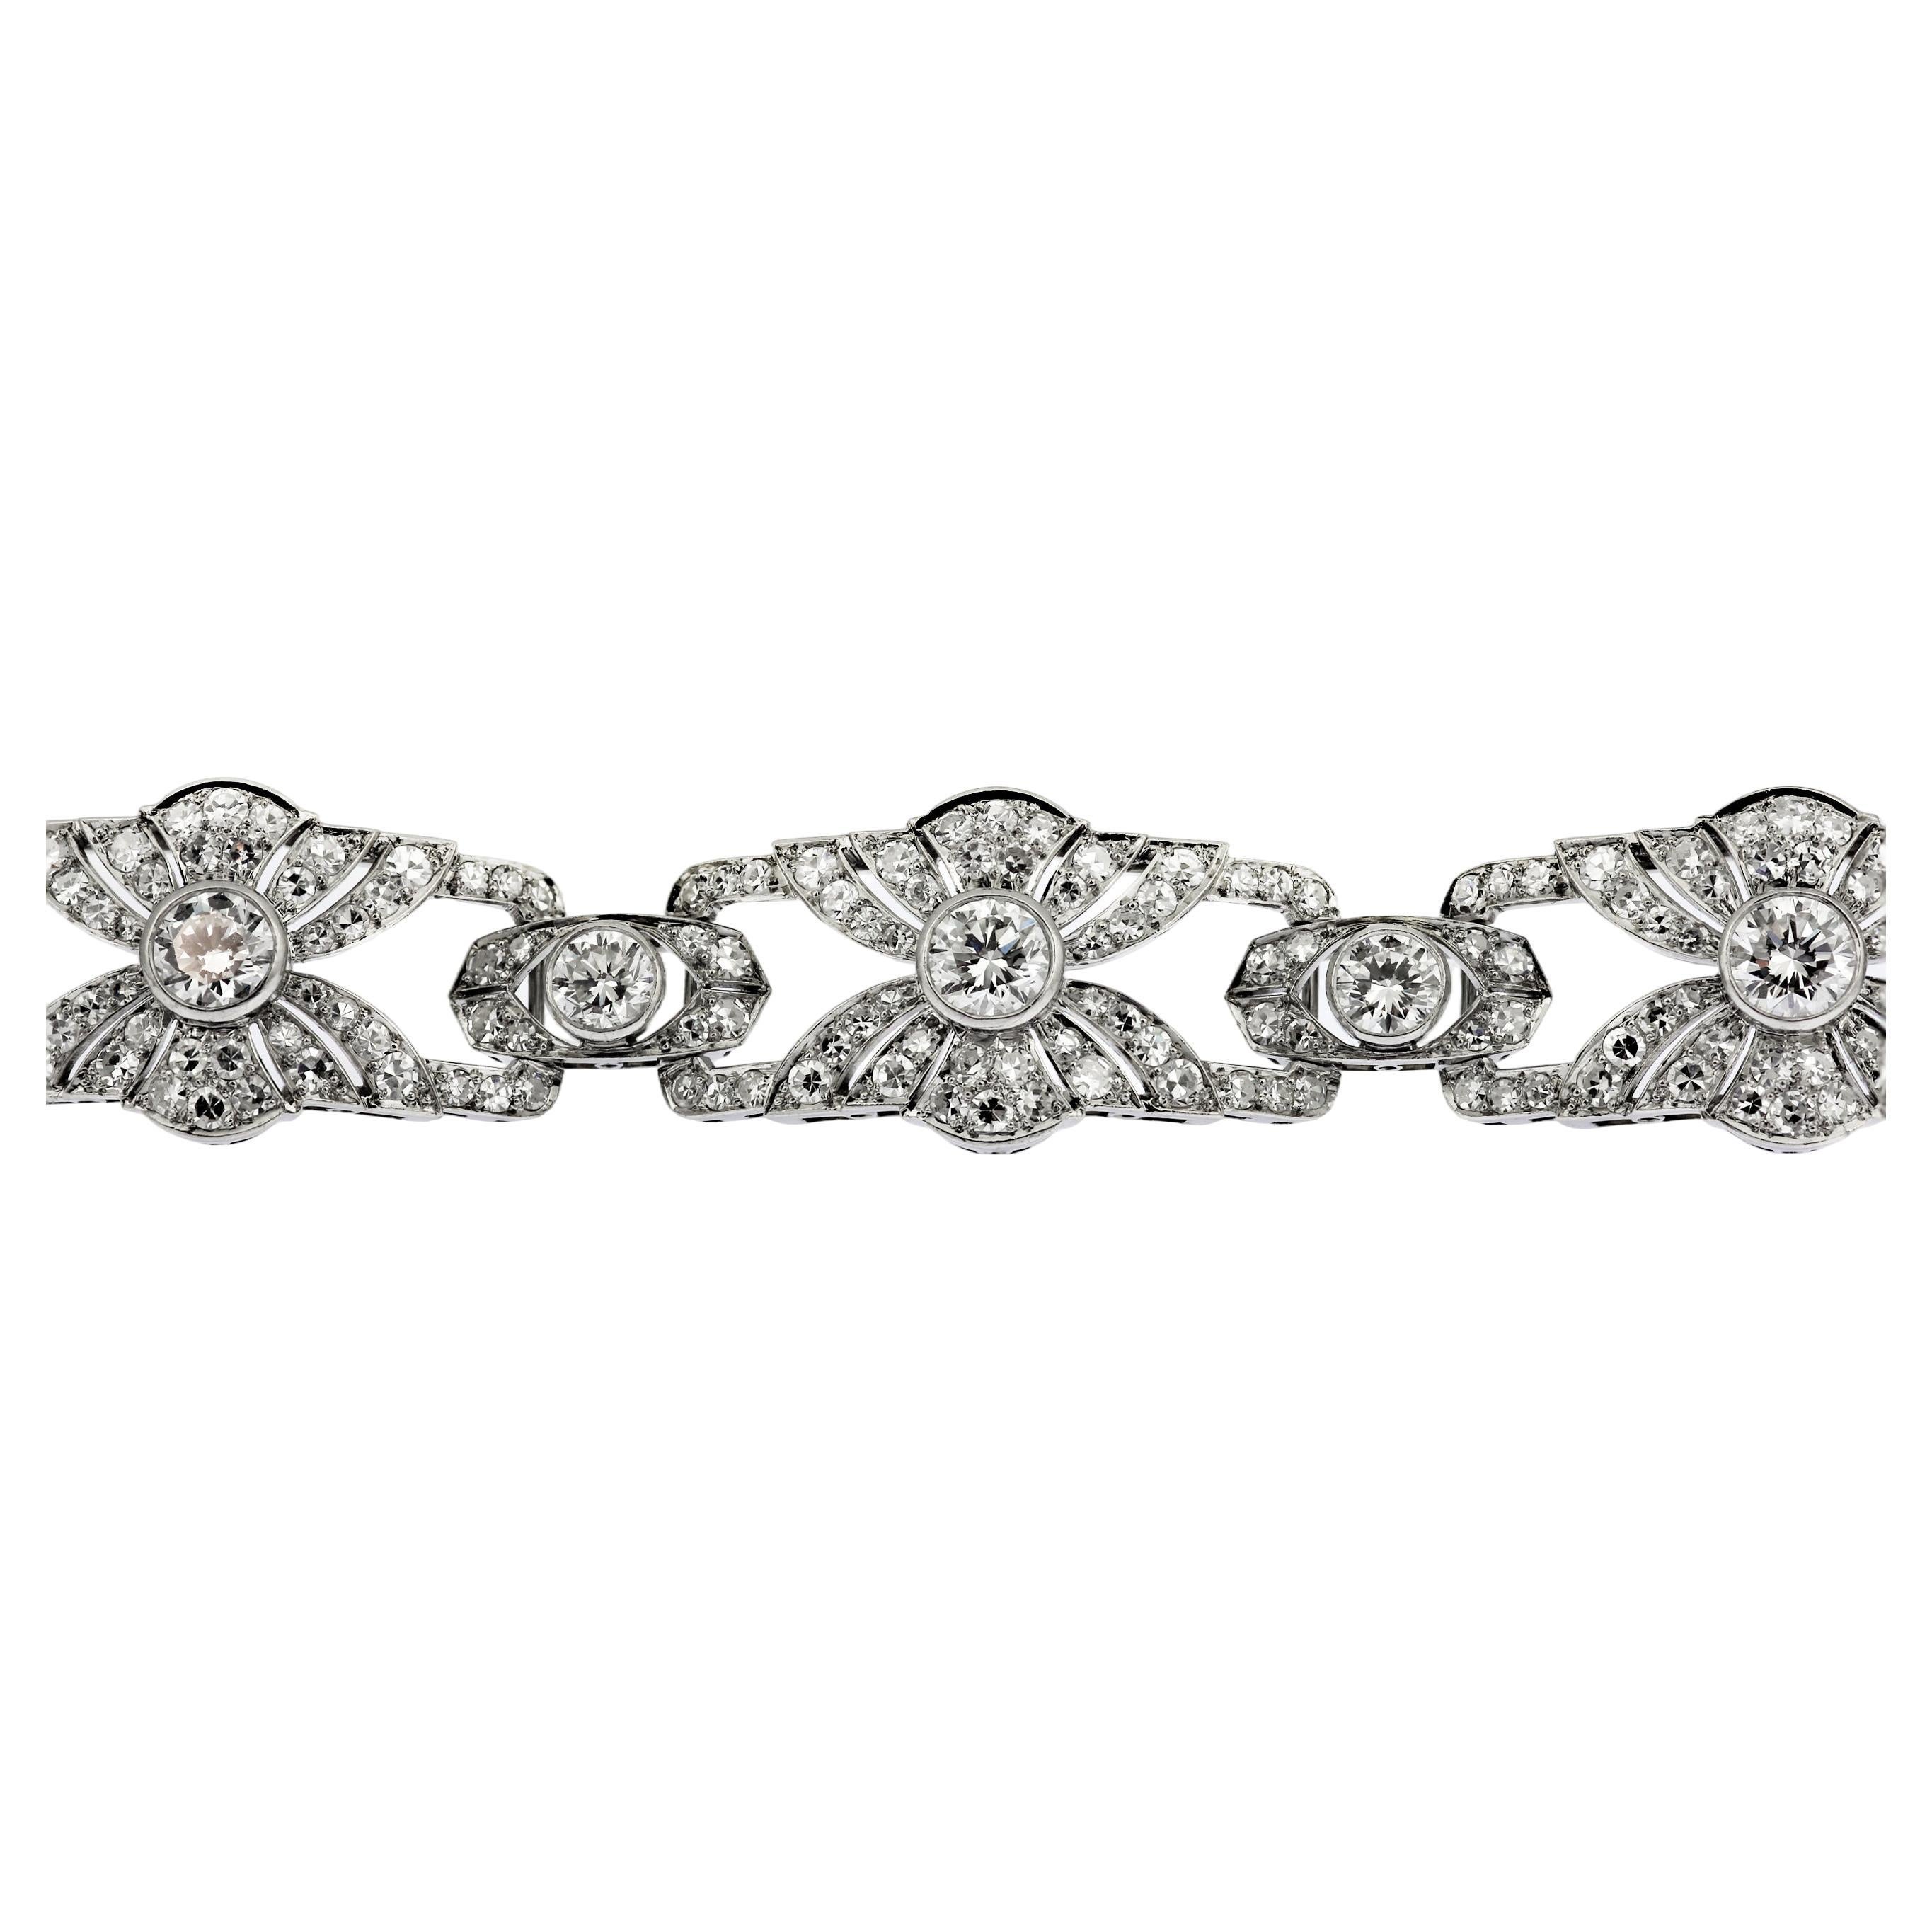 Round Cut Platinum Art Deco Fine White Diamond Bracelet with Fan Motif Design approx. 12ct For Sale